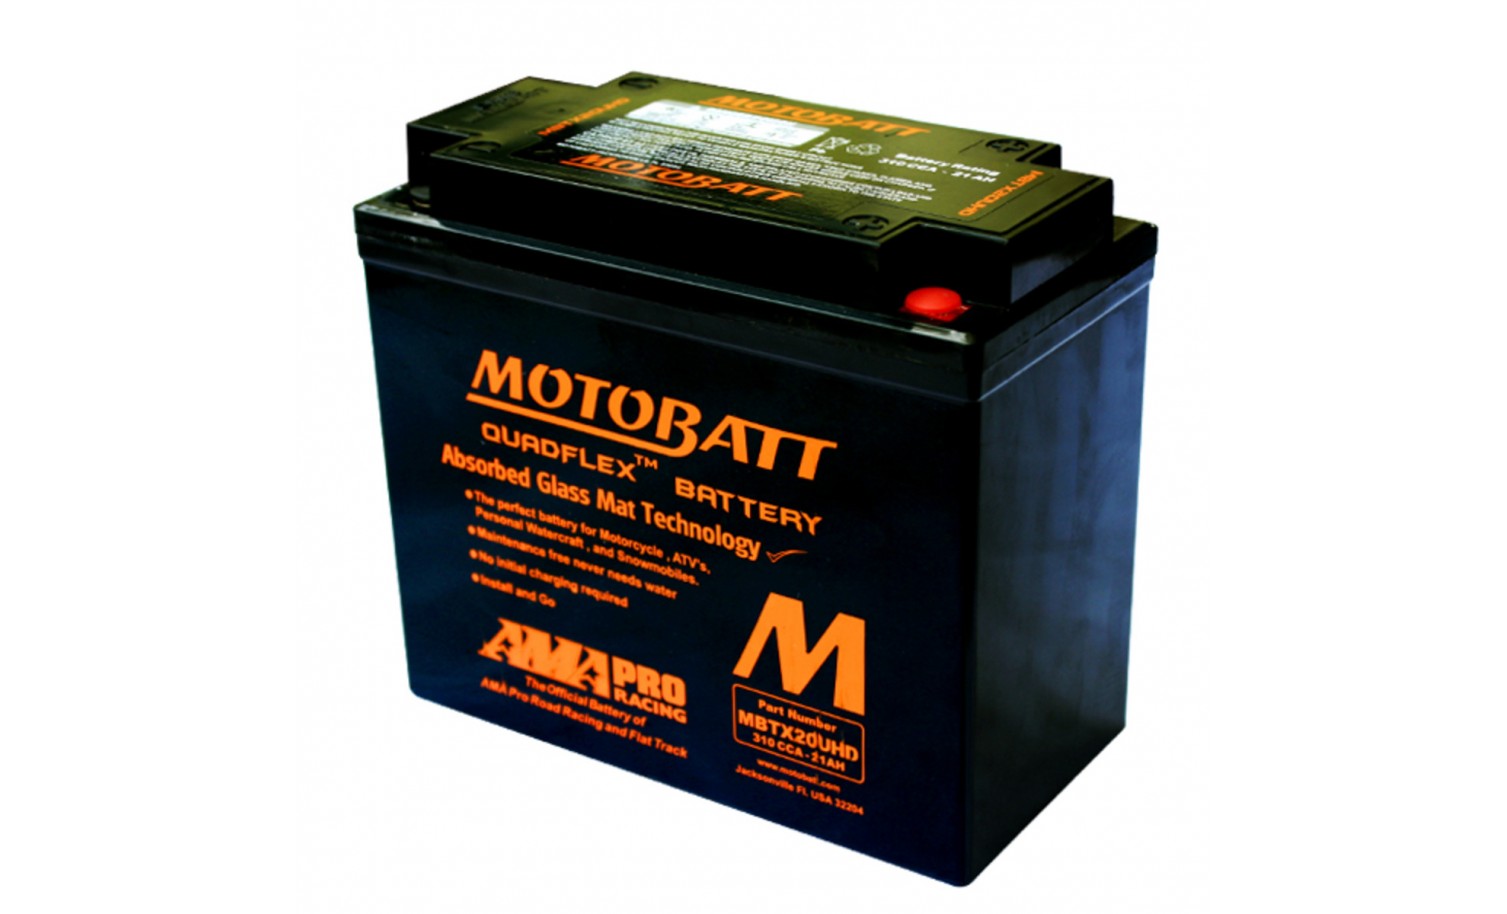 Akumulator AGM MBTX12U MOTOBATT 12V 14Ah